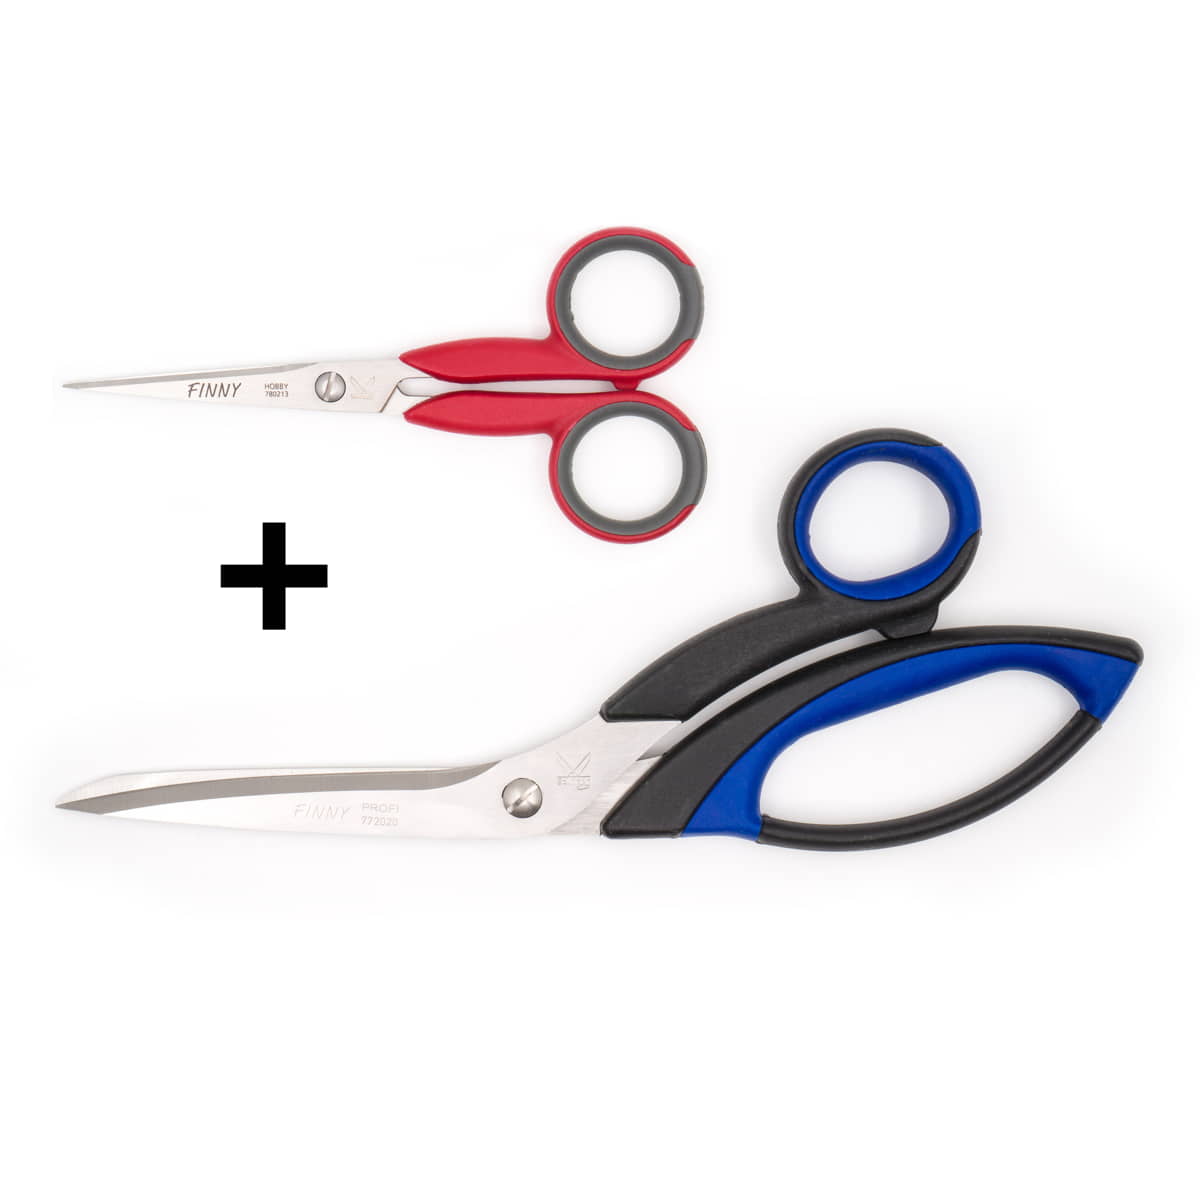 Finny scissors set, fabric scissors 22 cm